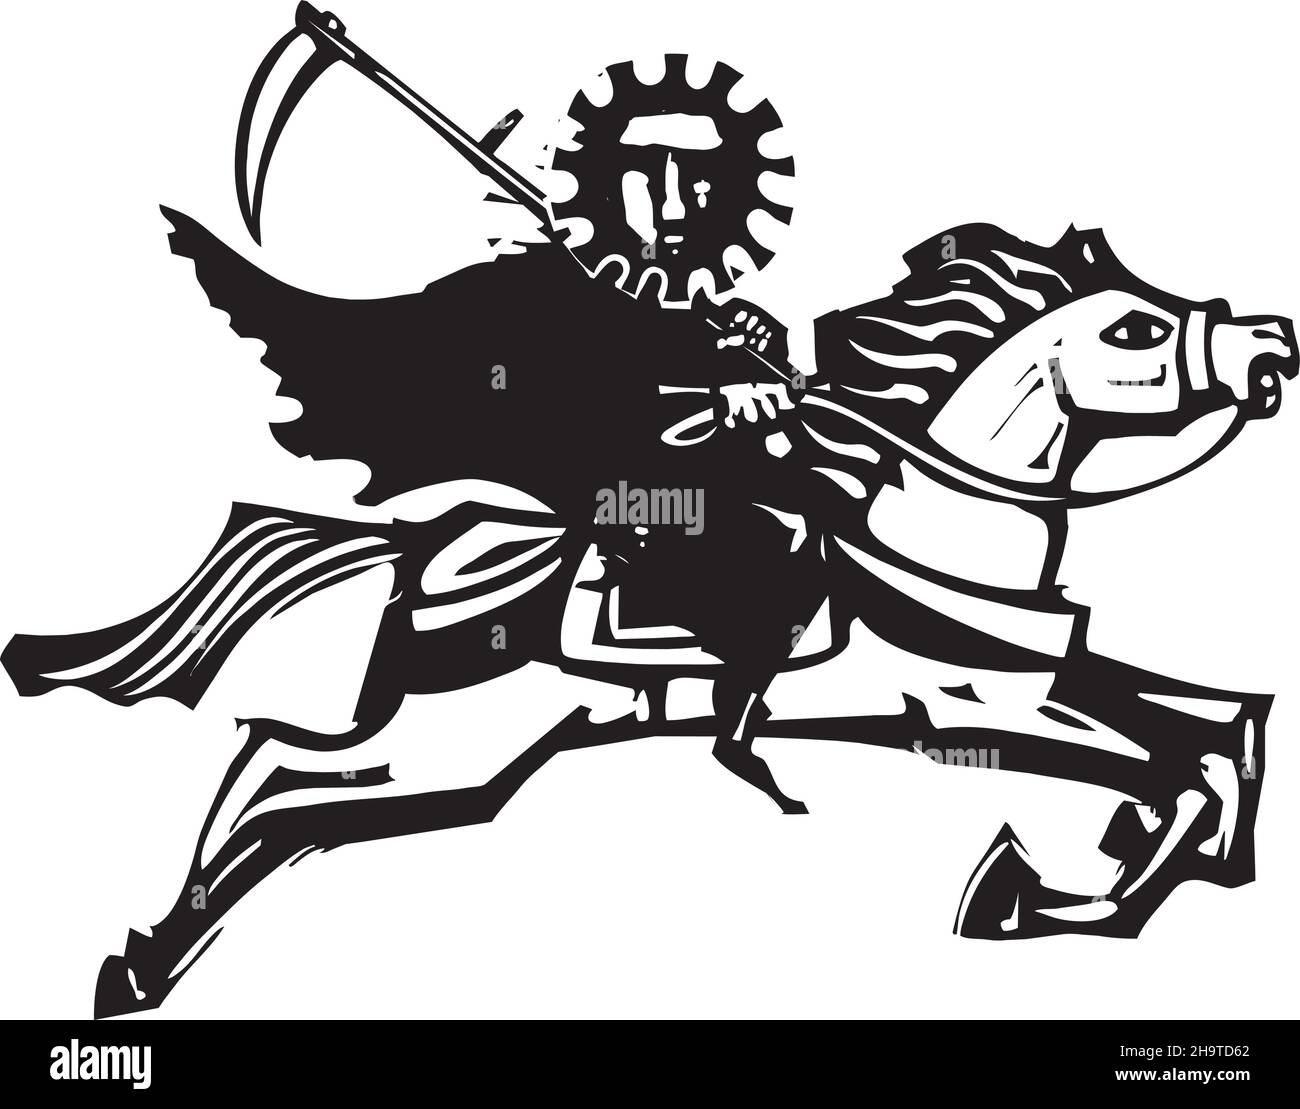 Ilustración de estilo expresionista talada en madera de muerte pandémica covid en un caballo Ilustración del Vector